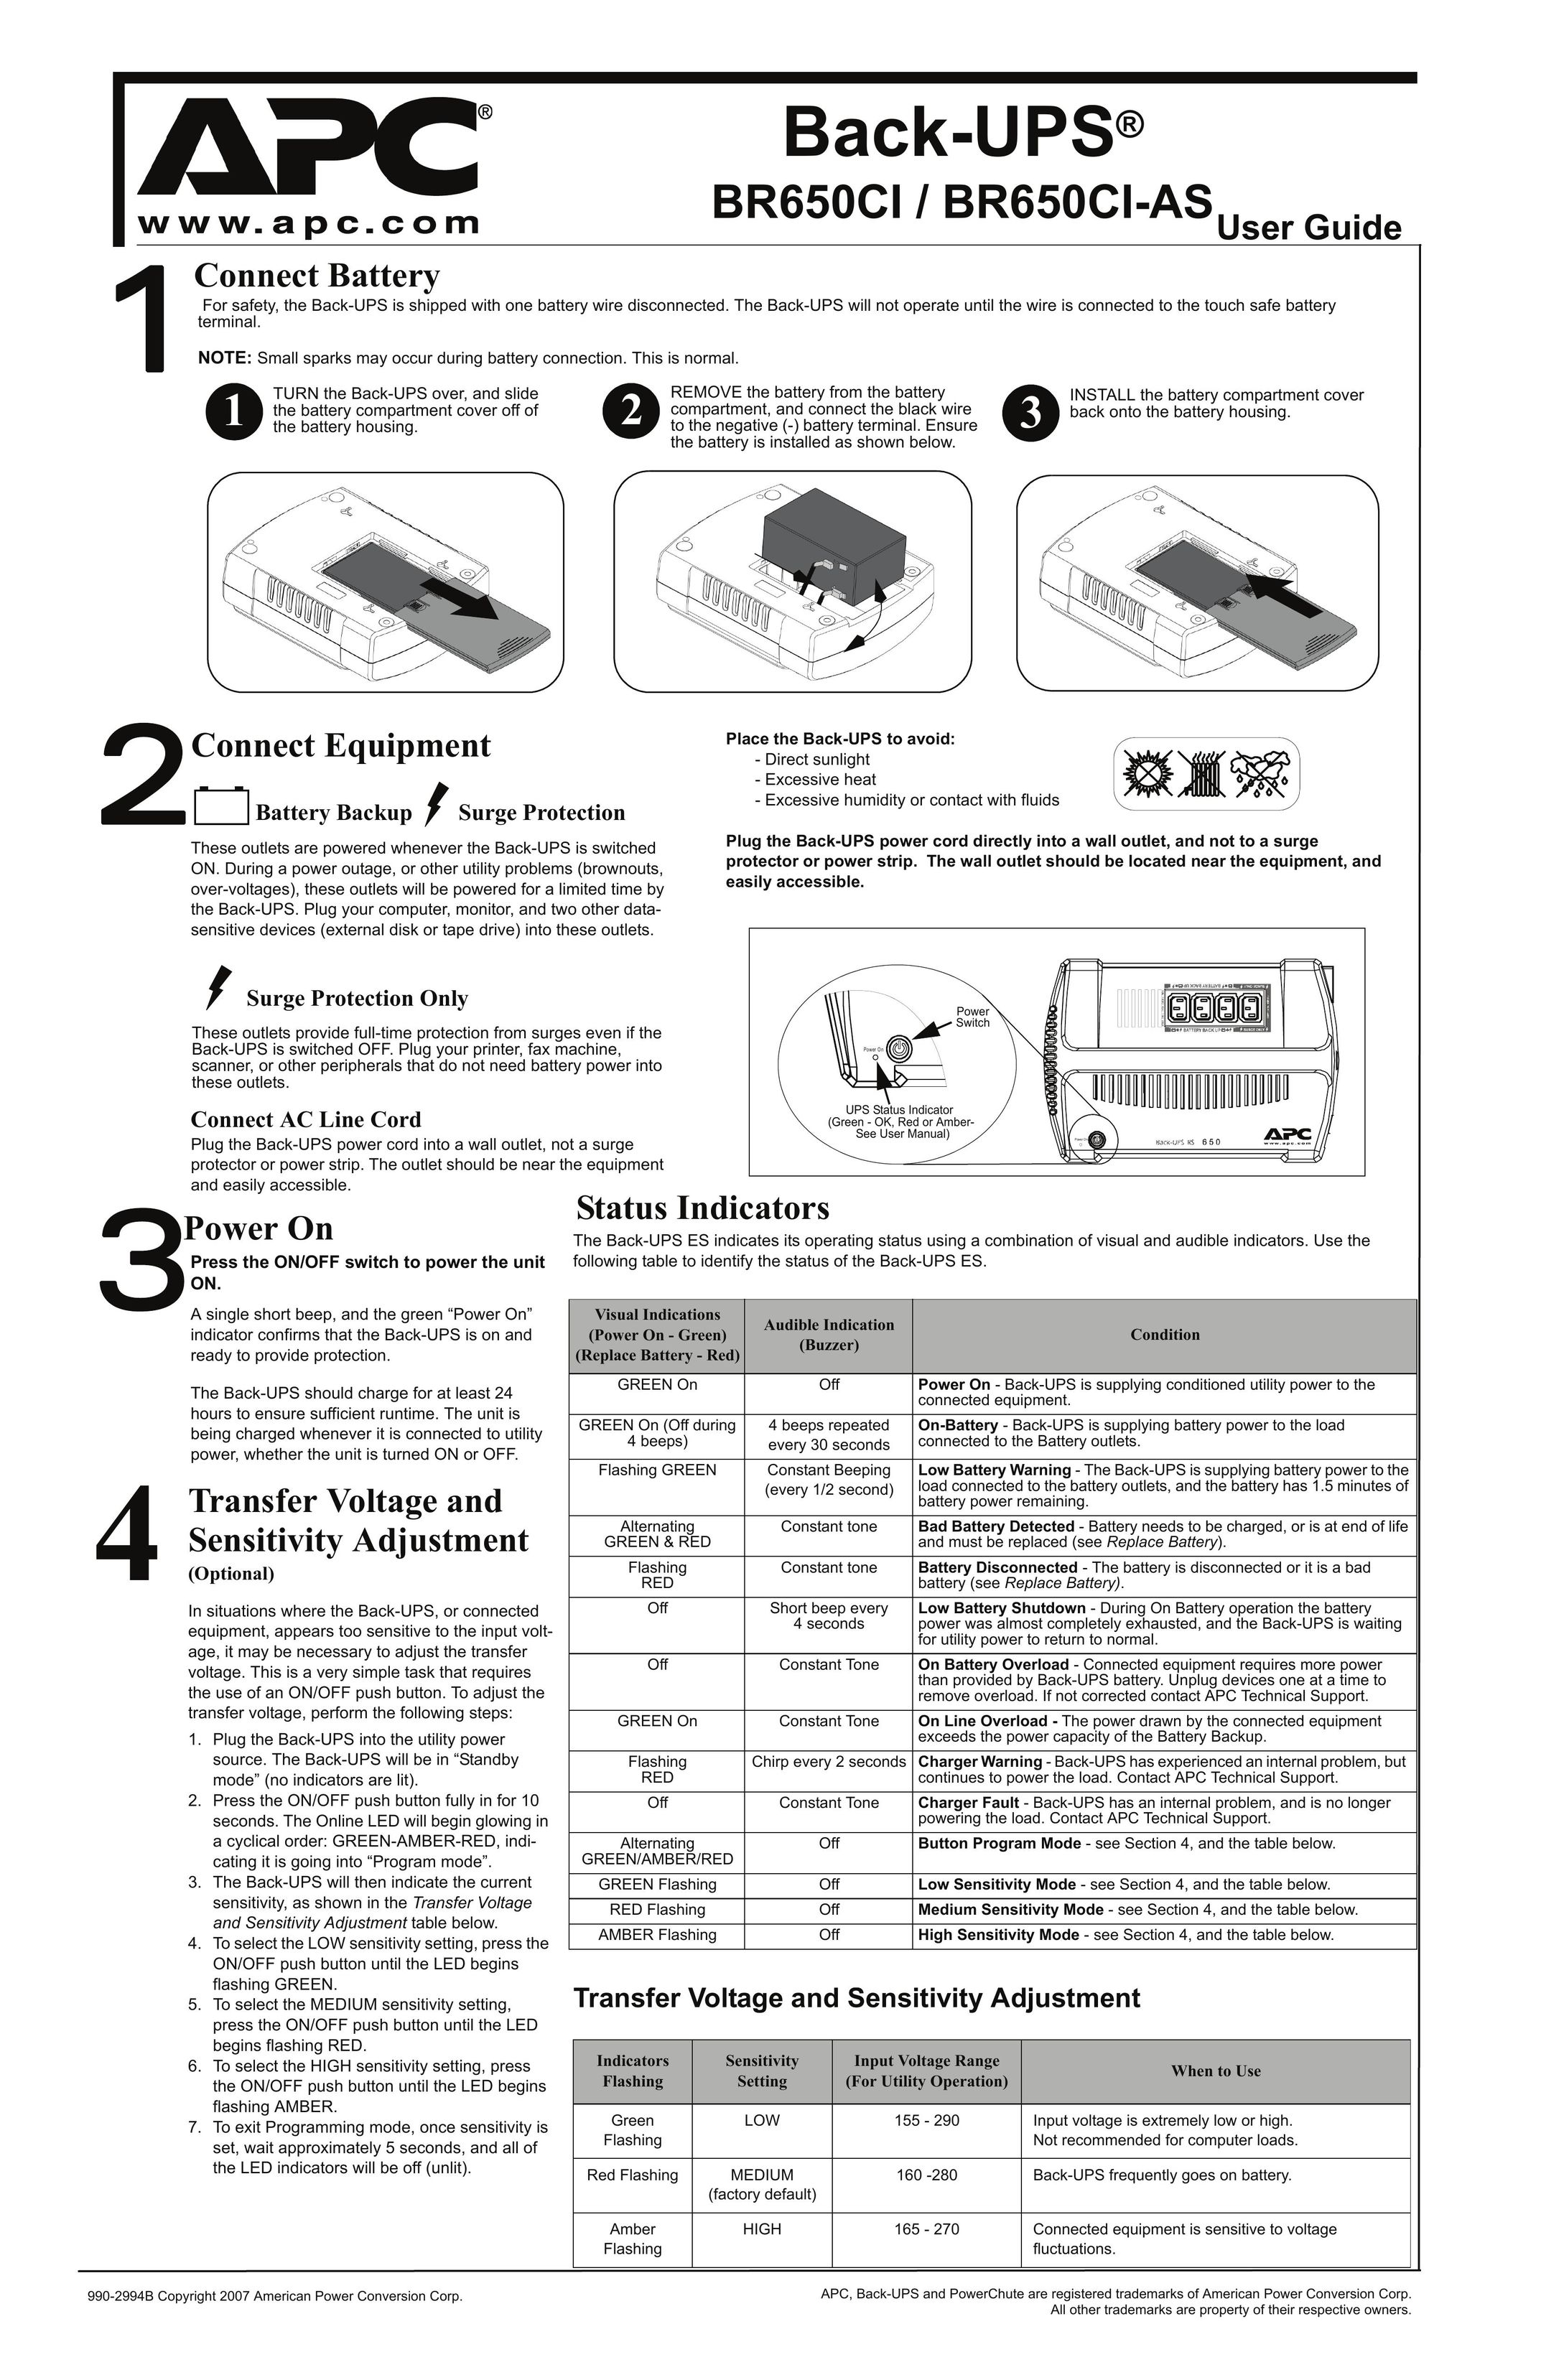 APC BR650CI Saw User Manual